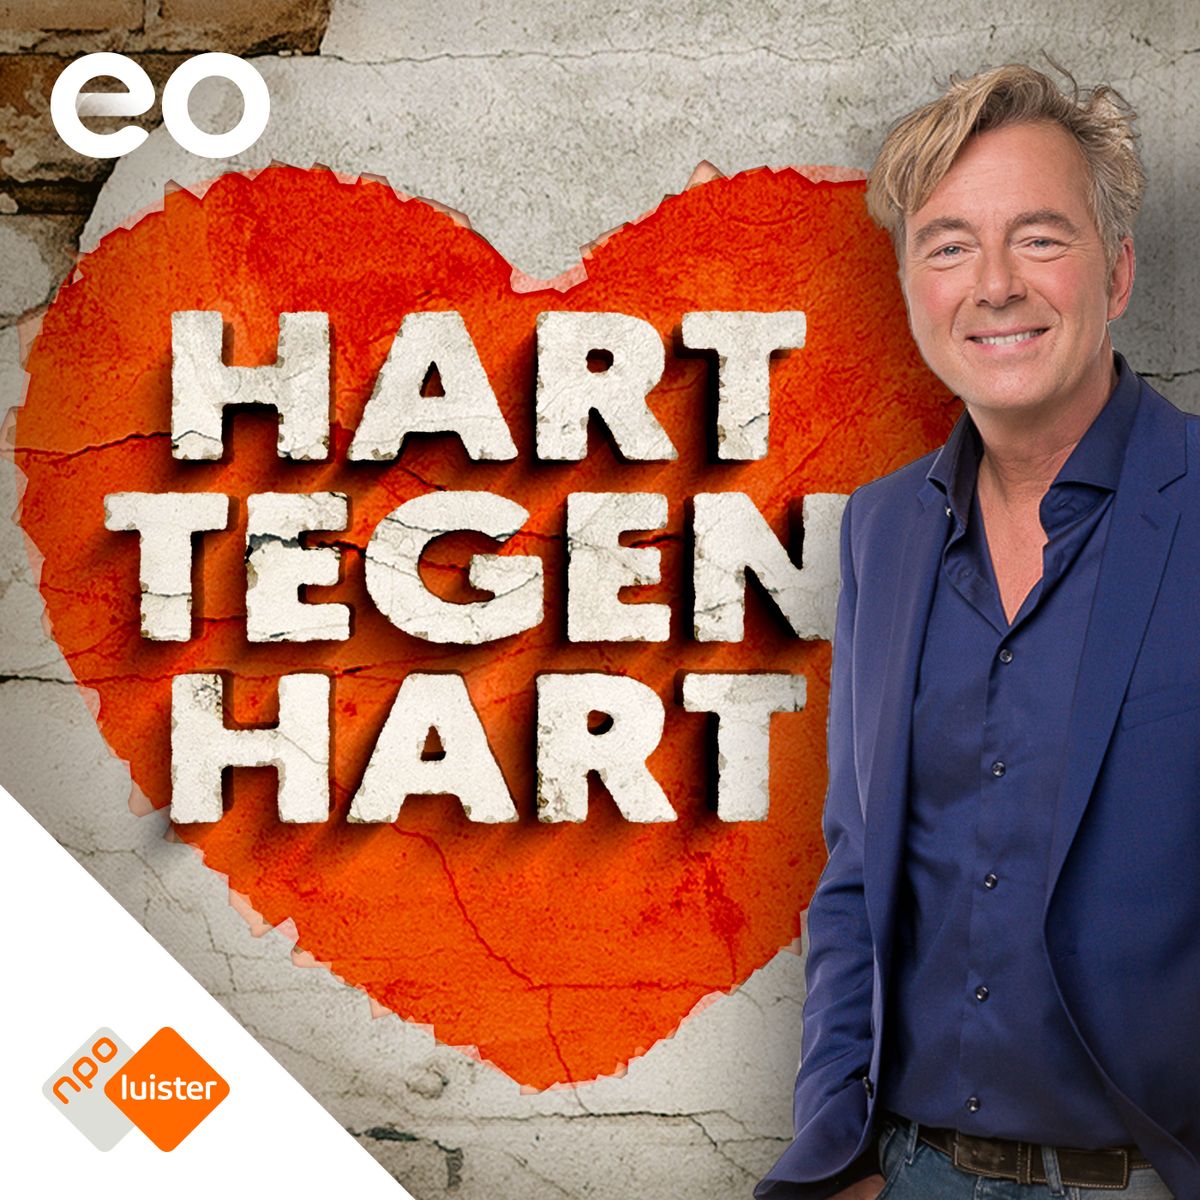 Bert van Leeuwen voert open gesprekken over relatieproblemen in EO-podcast ‘Hart tegen hart’